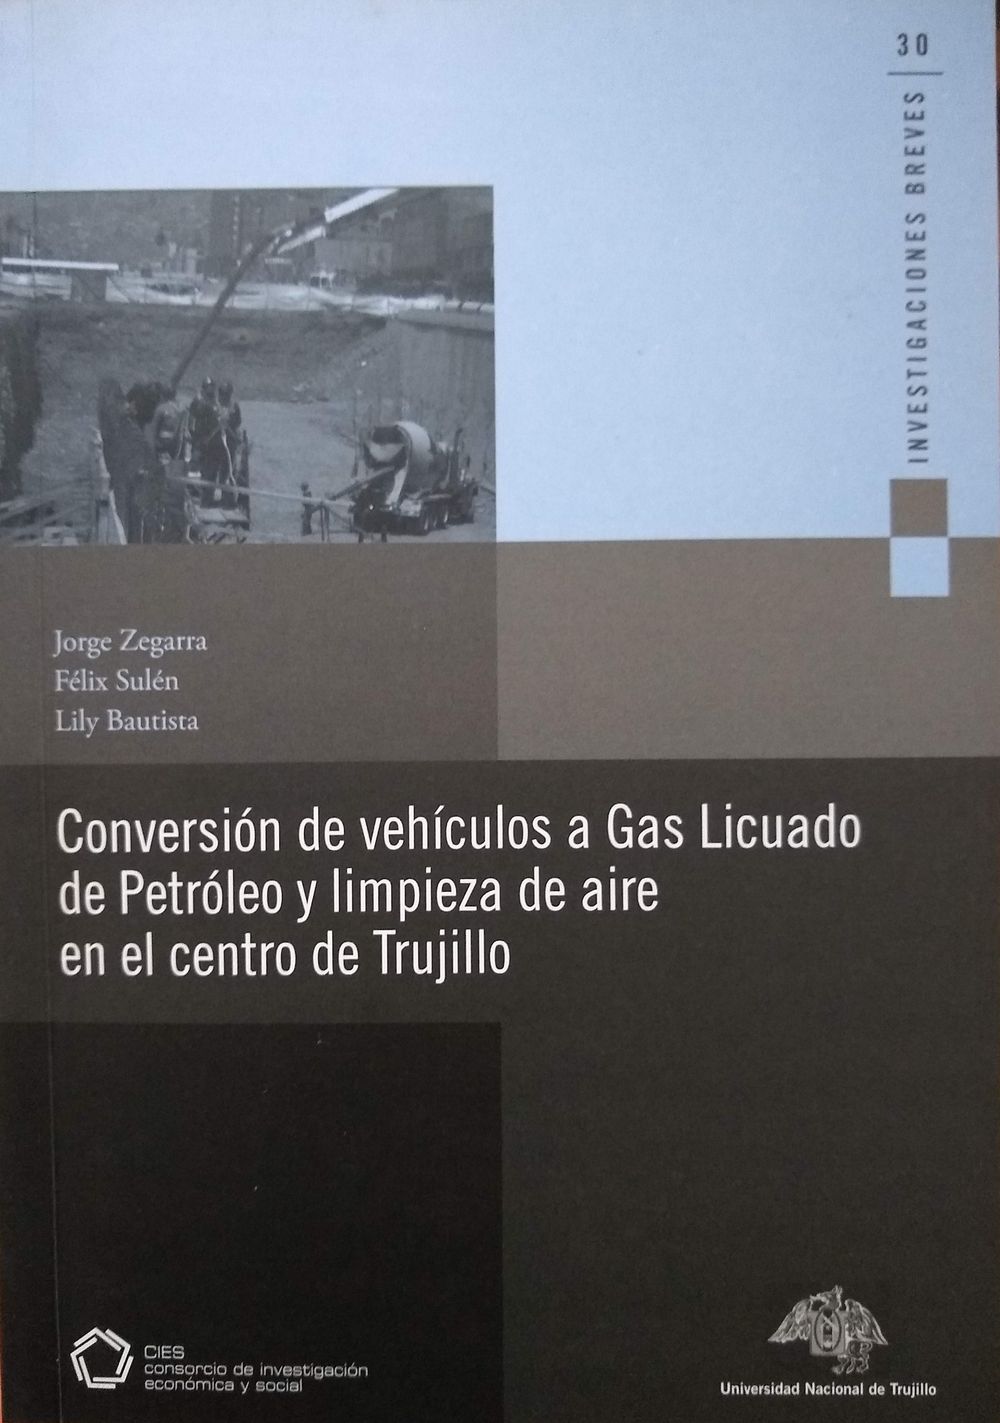 Conversión de vehículos a gas licuado de petróleo y limpieza de aire en el centro de Trujillo